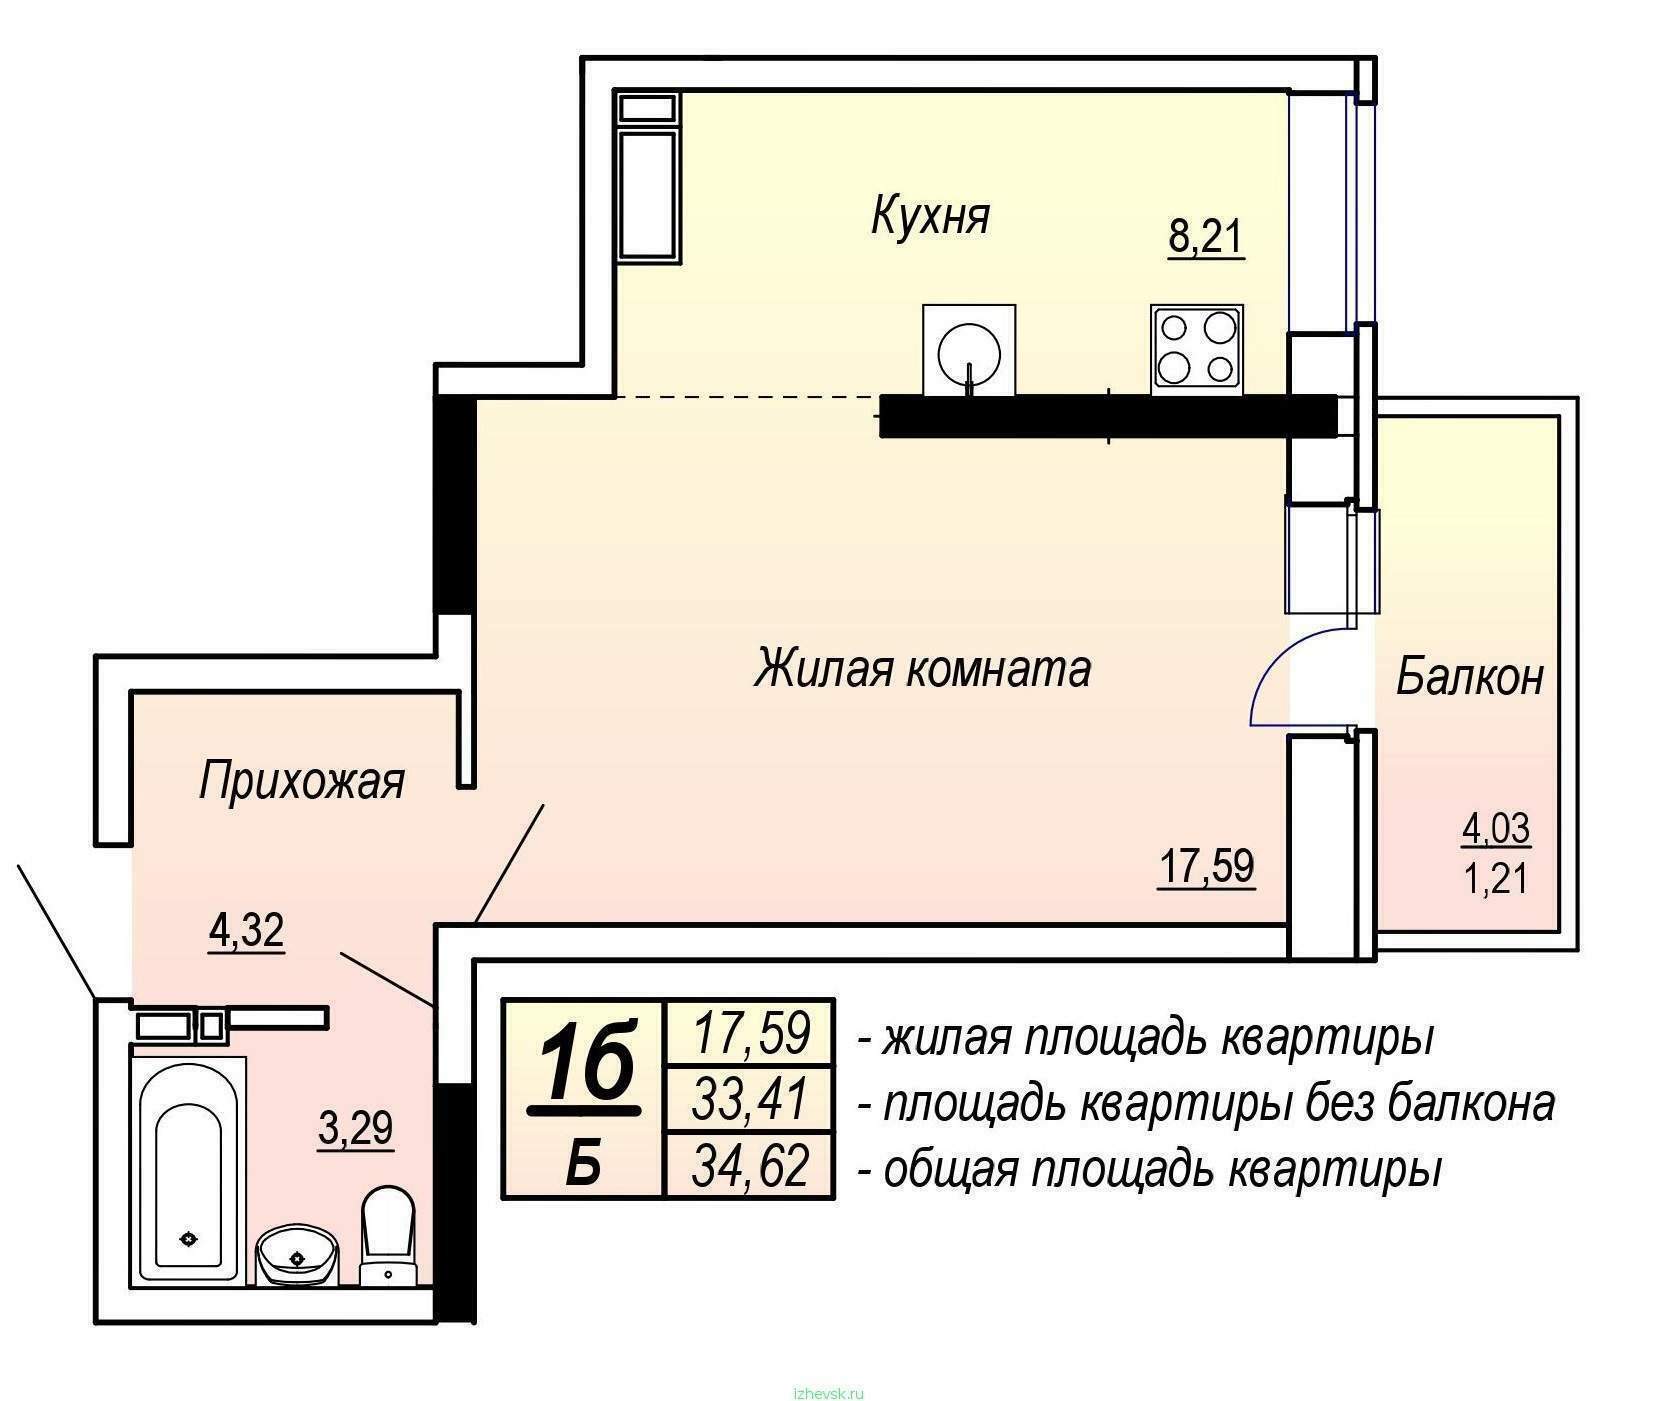 Требований к жилой квартире. Общая площадь квартиры. Жилая площадь квартиры и общая площадь. Жилая площадь квартиры это. Общая площадь квартиры на плане.